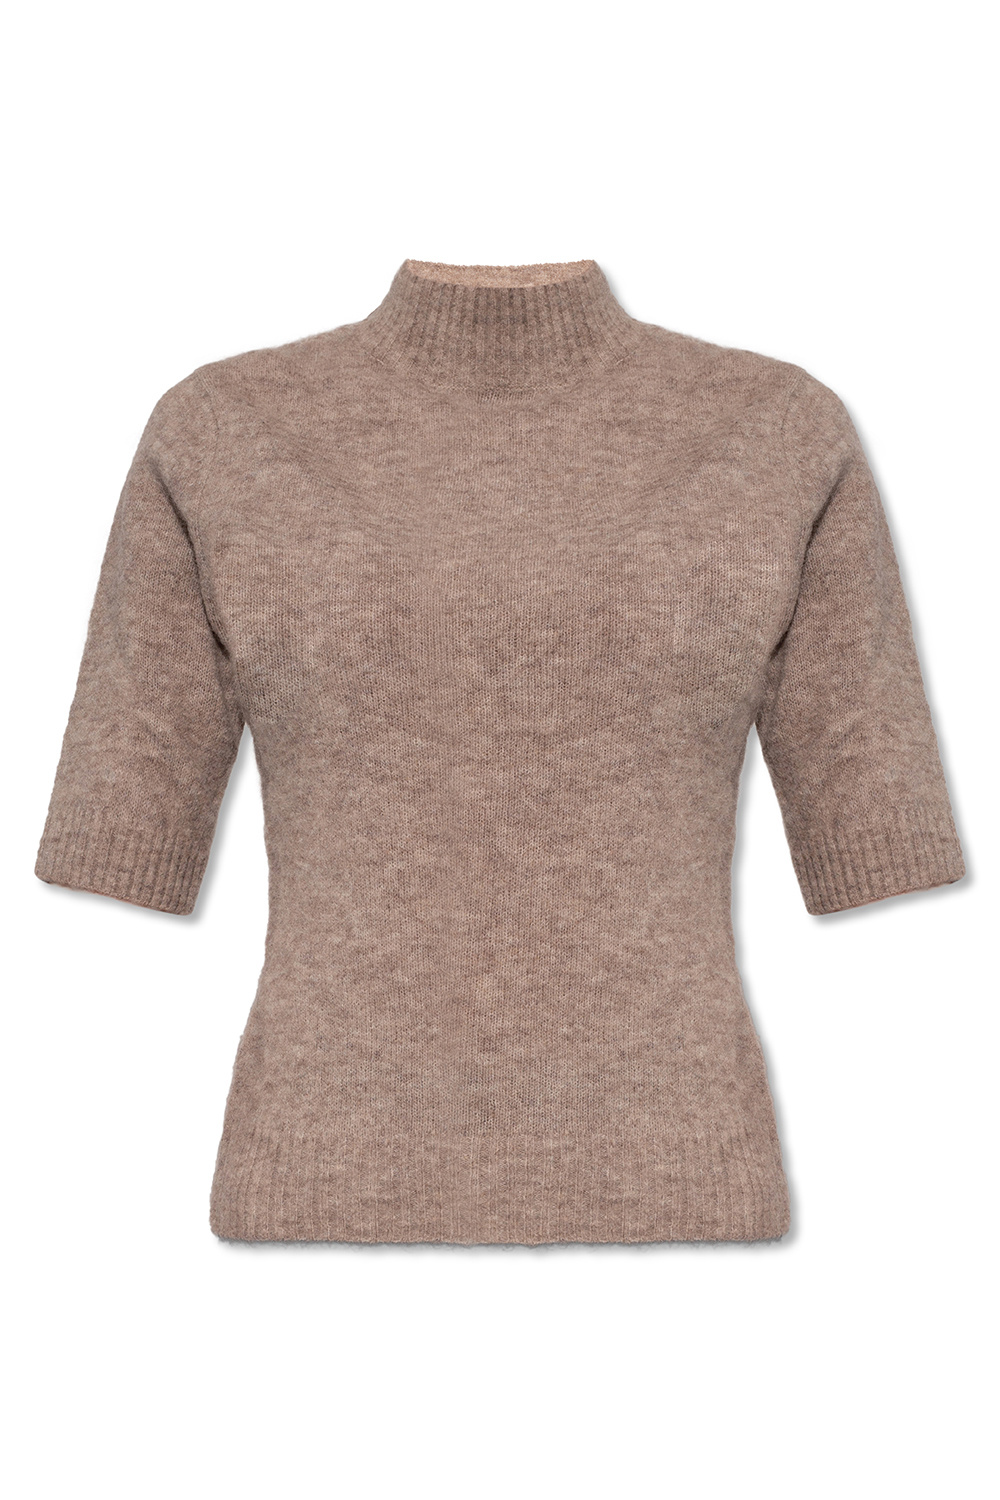 Holzweiler Wool sweater